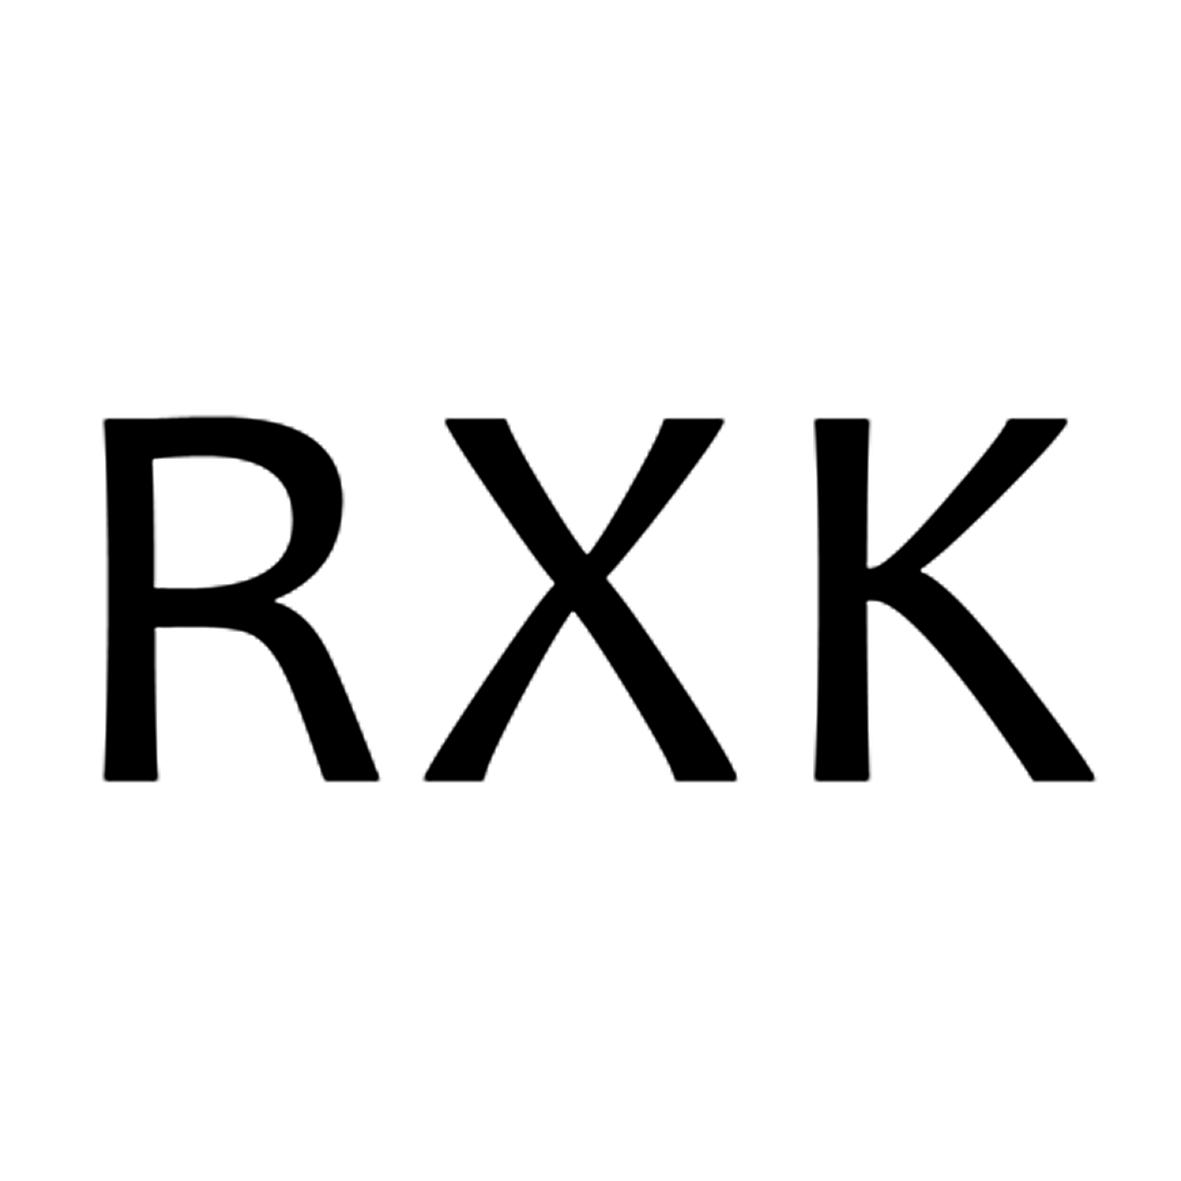 RXK